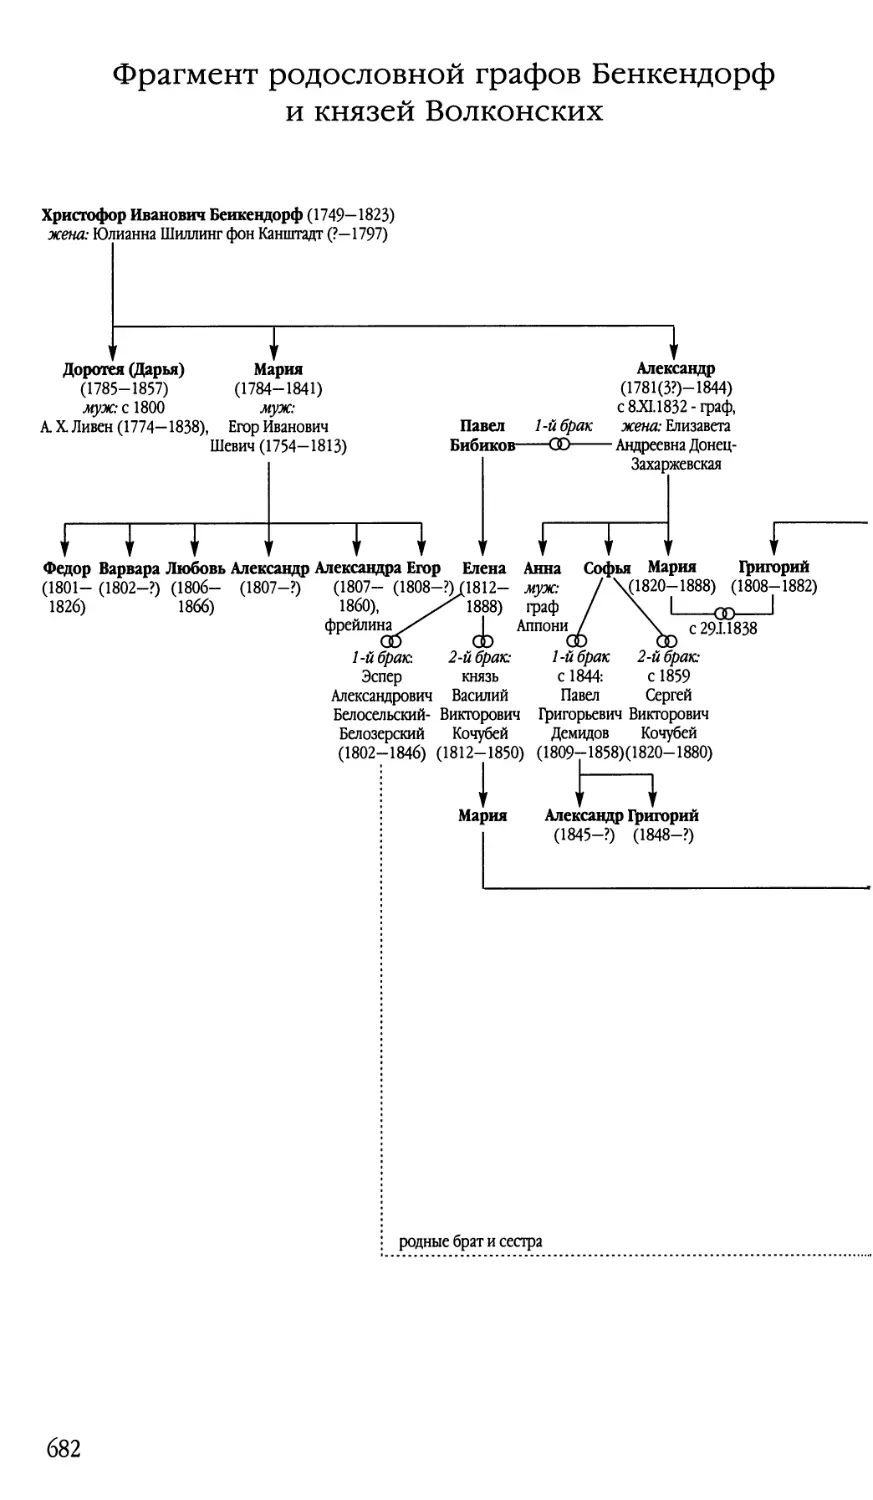 Схема 8. Фрагмент родословной графов Бенкендорф и князей Волконских